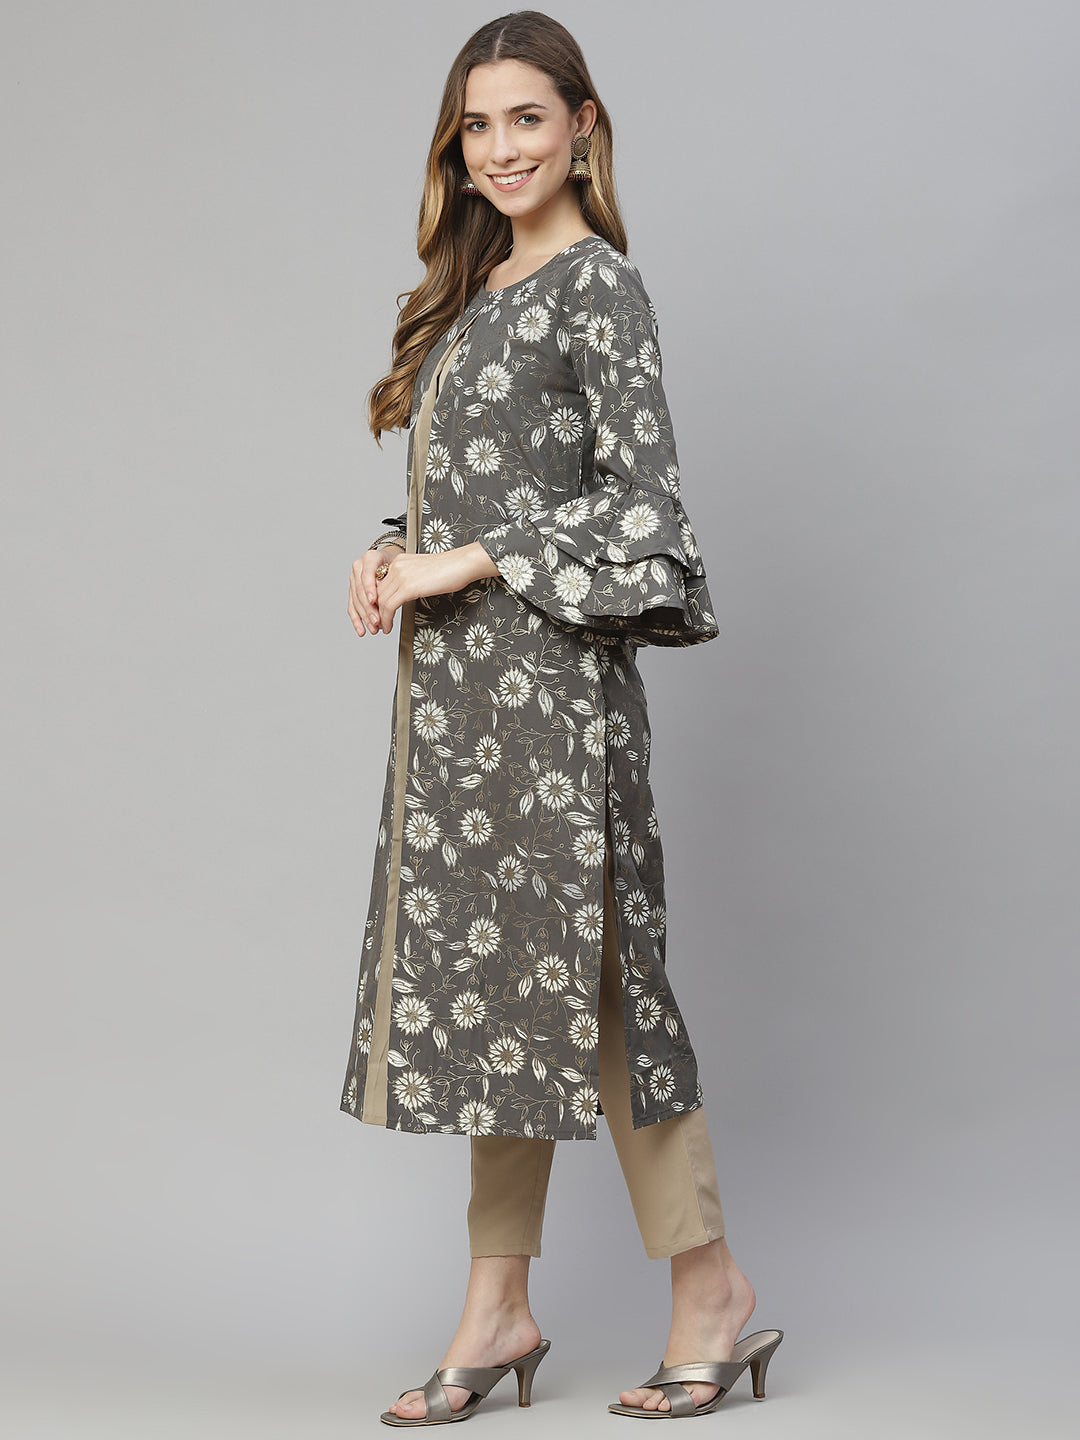 Women’s grey floral printed crepe kurta and pant set by Ziyaa – (2 pcs set)